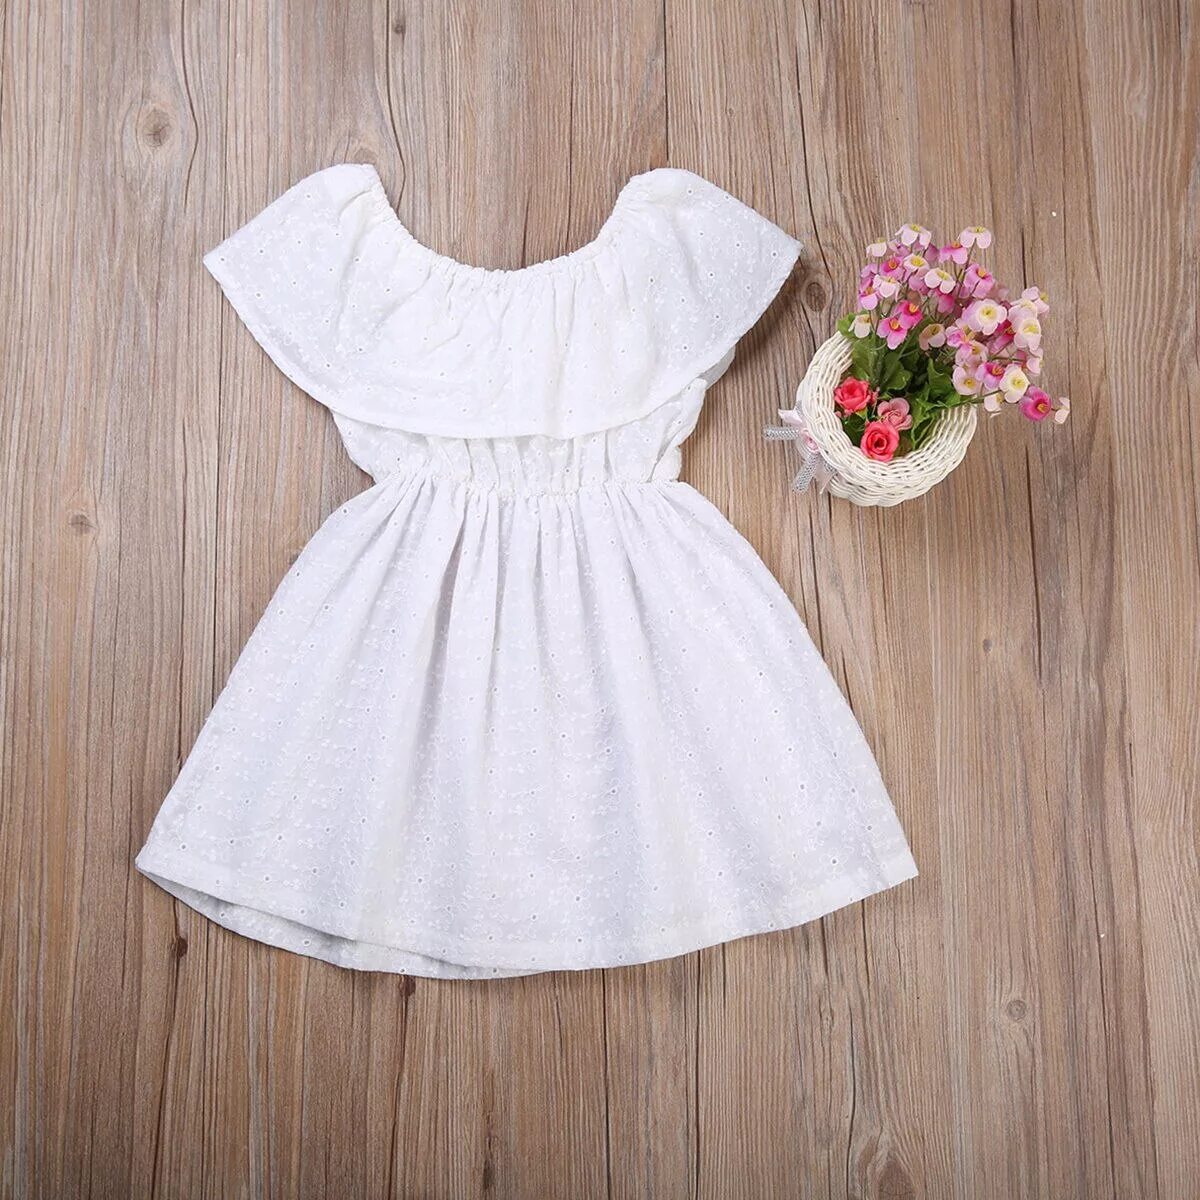 Белое летнее платье для девочки. Платье из хлопка для девочки. Платье из шитья для девочки. Хлопковое платье для девочки.